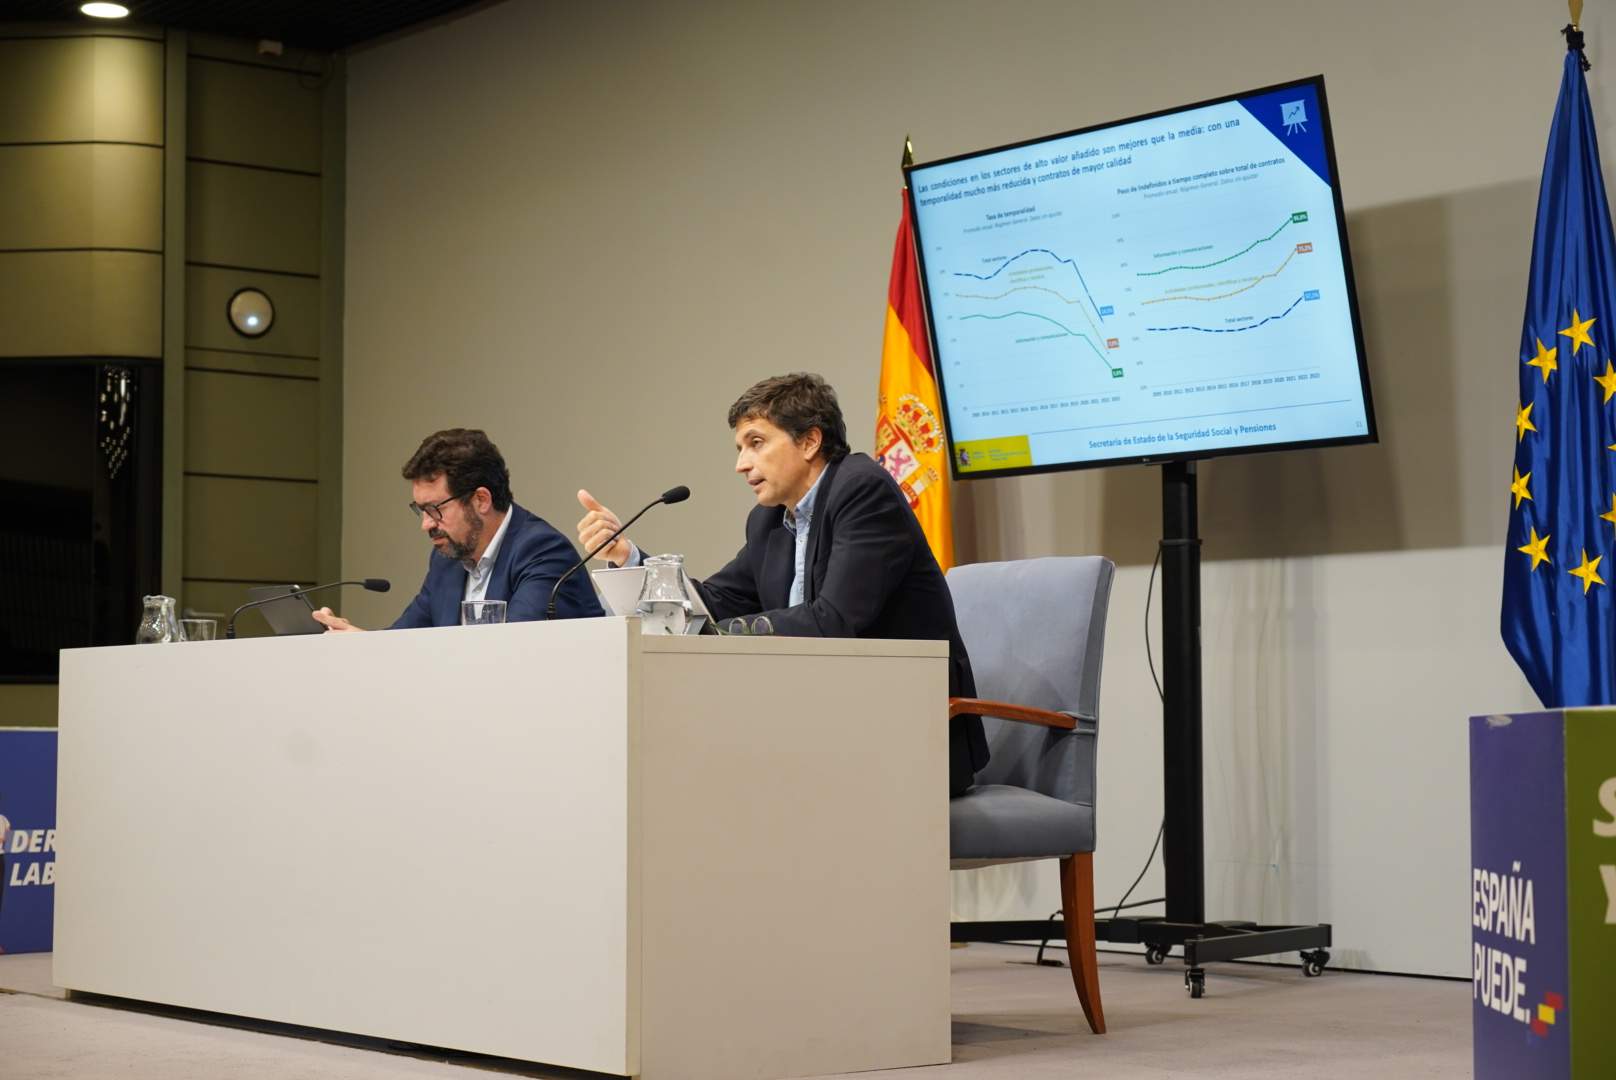 Els fixos discontinus s'estanquen i el govern espanyol conclou la polèmica amb aquest contracte